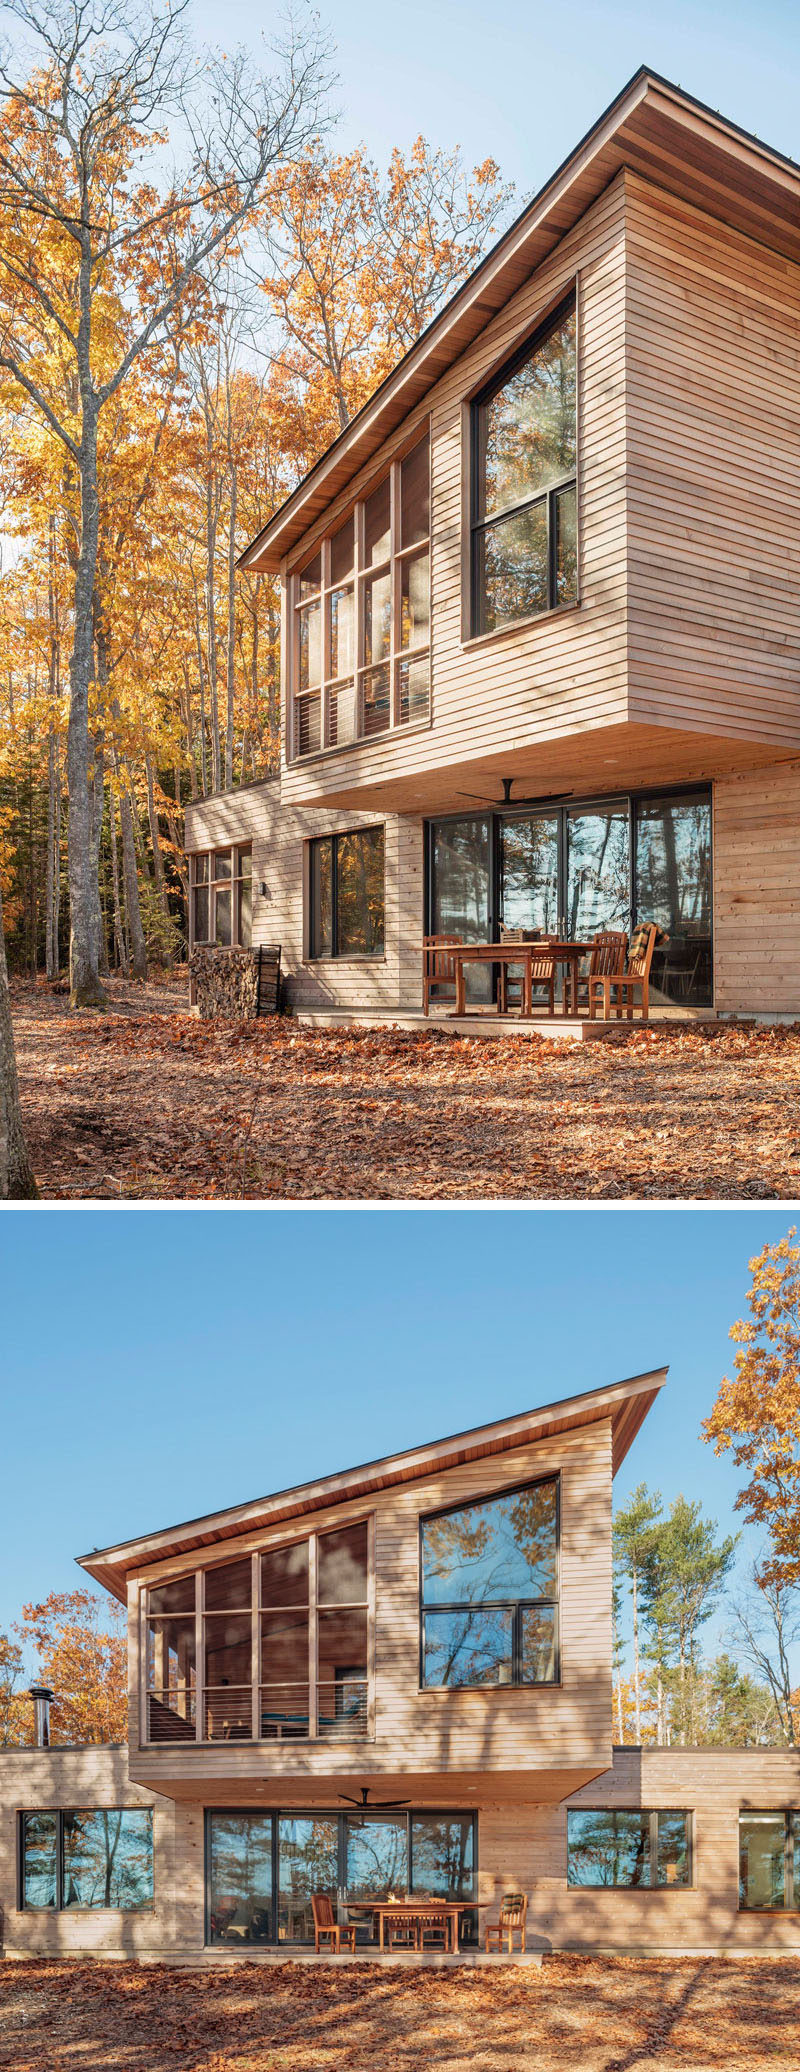  Kaplan Thompson Architects спроектировали новый современный дом в Харпсвелле, штат Мэн, который стоит у воды и имеет внешний вид кедрового сайдинга с различными текстурами, которые позволяют дому раствориться в деревьях. #ModernHouse #WoodHouse 